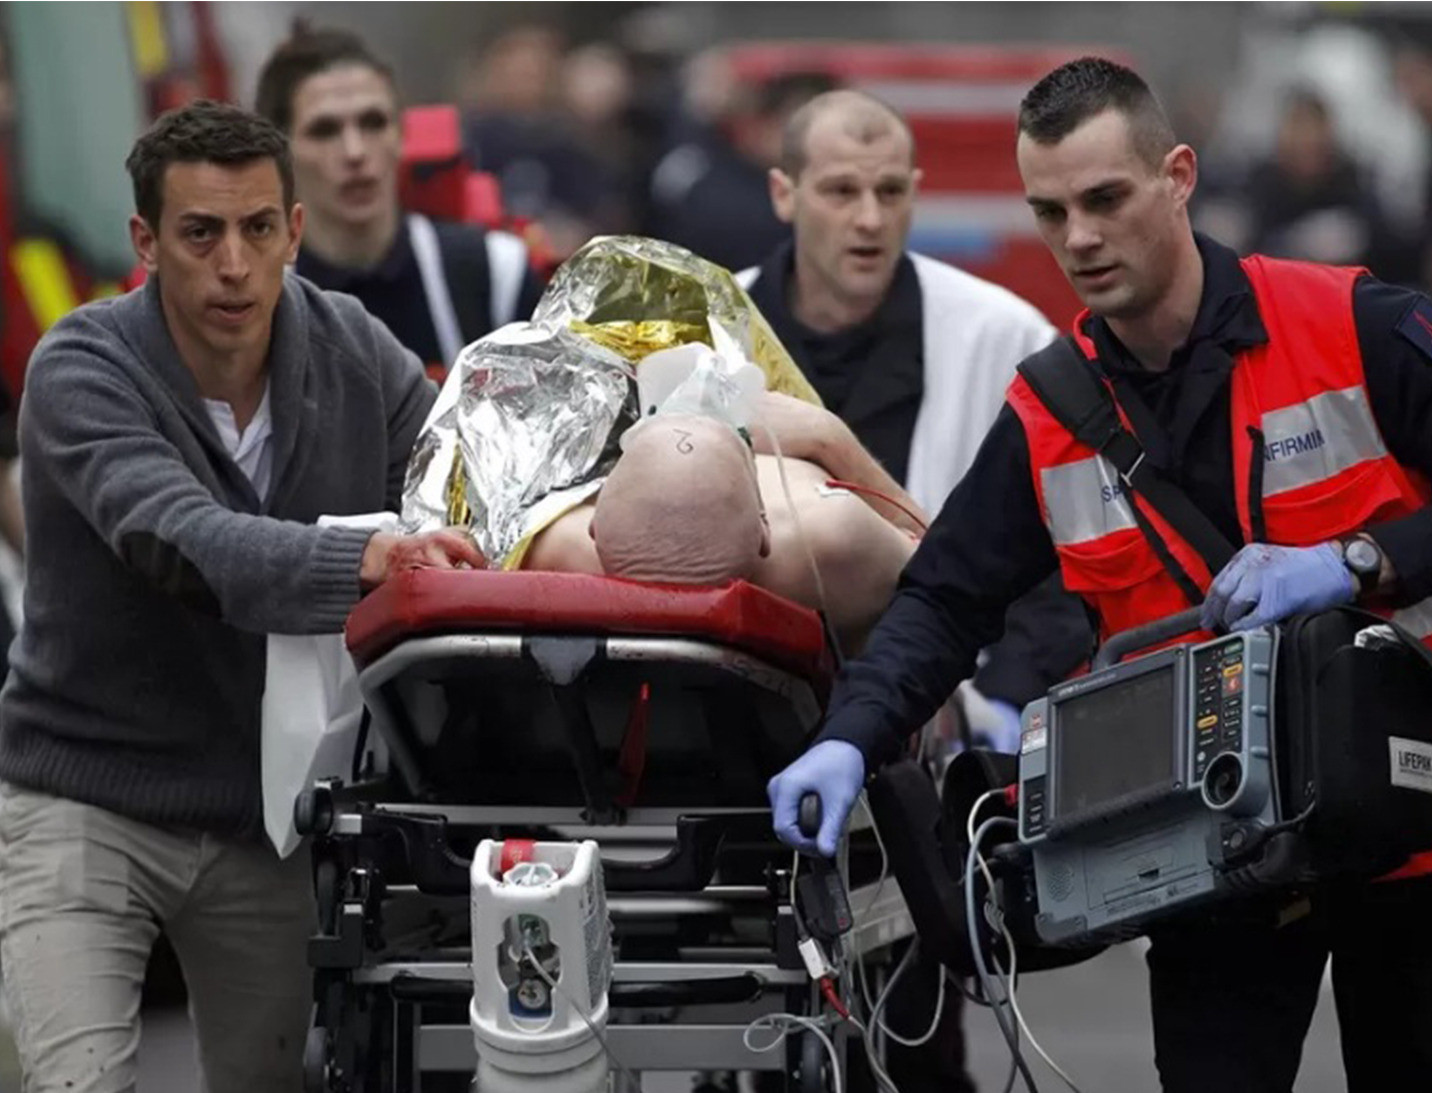 Na França, grupo terrorista invade redação de revista e mata pelo menos 12 pessoas